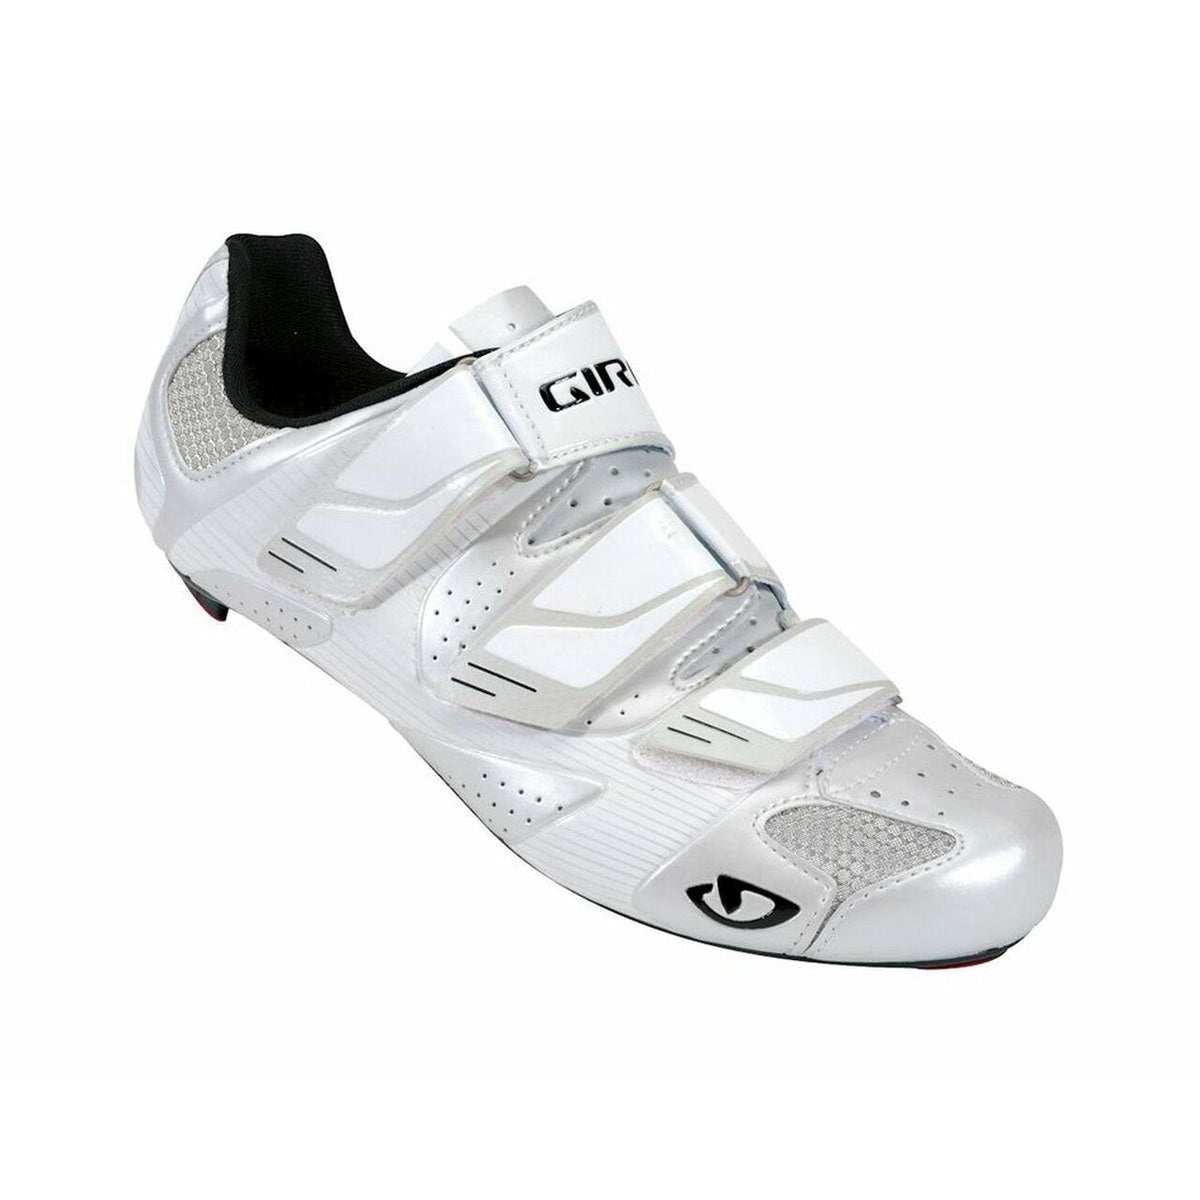 Giro Prolight SLX Road Shoe